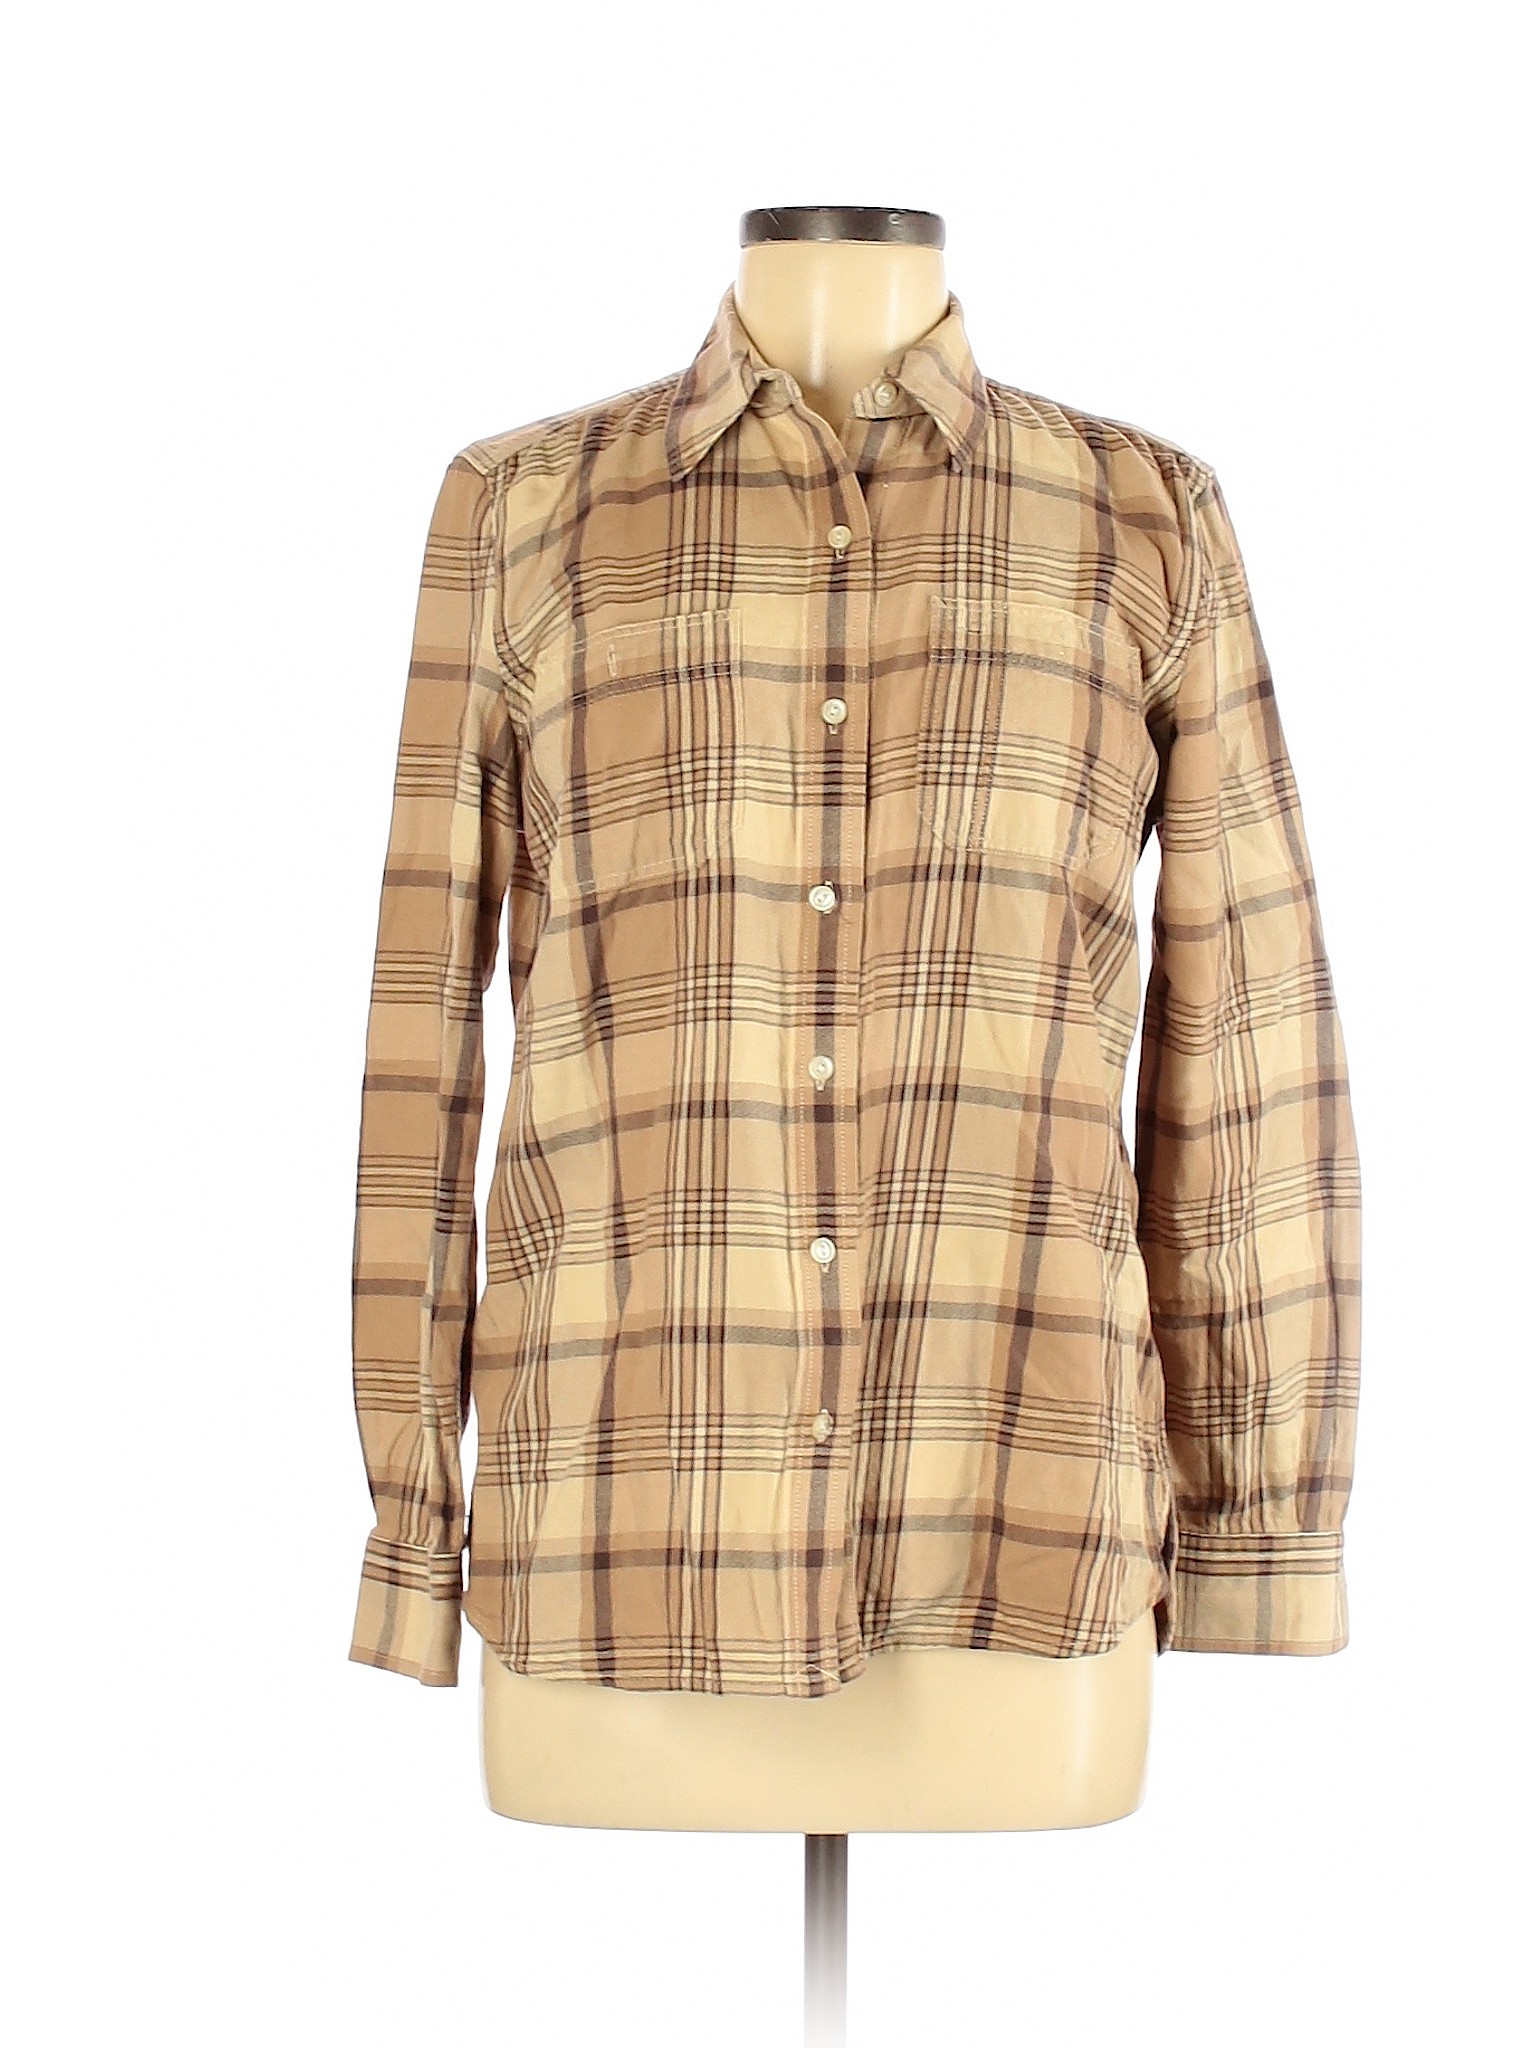 Lauren by Ralph Lauren Women Brown Long Sleeve Button-Down Shirt M | eBay